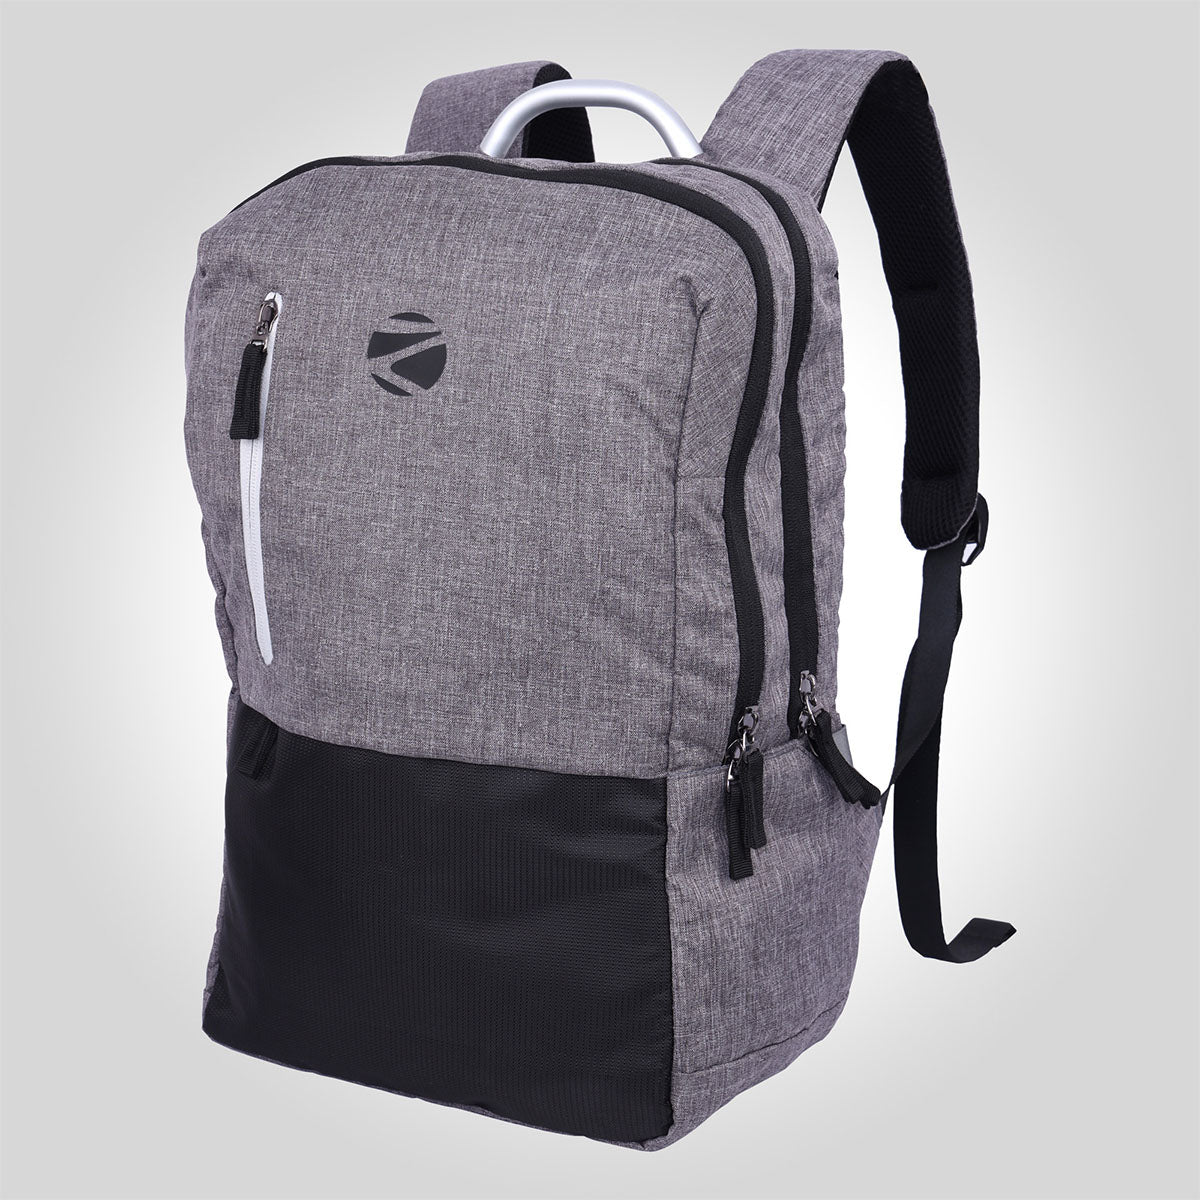 Zeb-Techshield X4 - Backpack - Zebronics